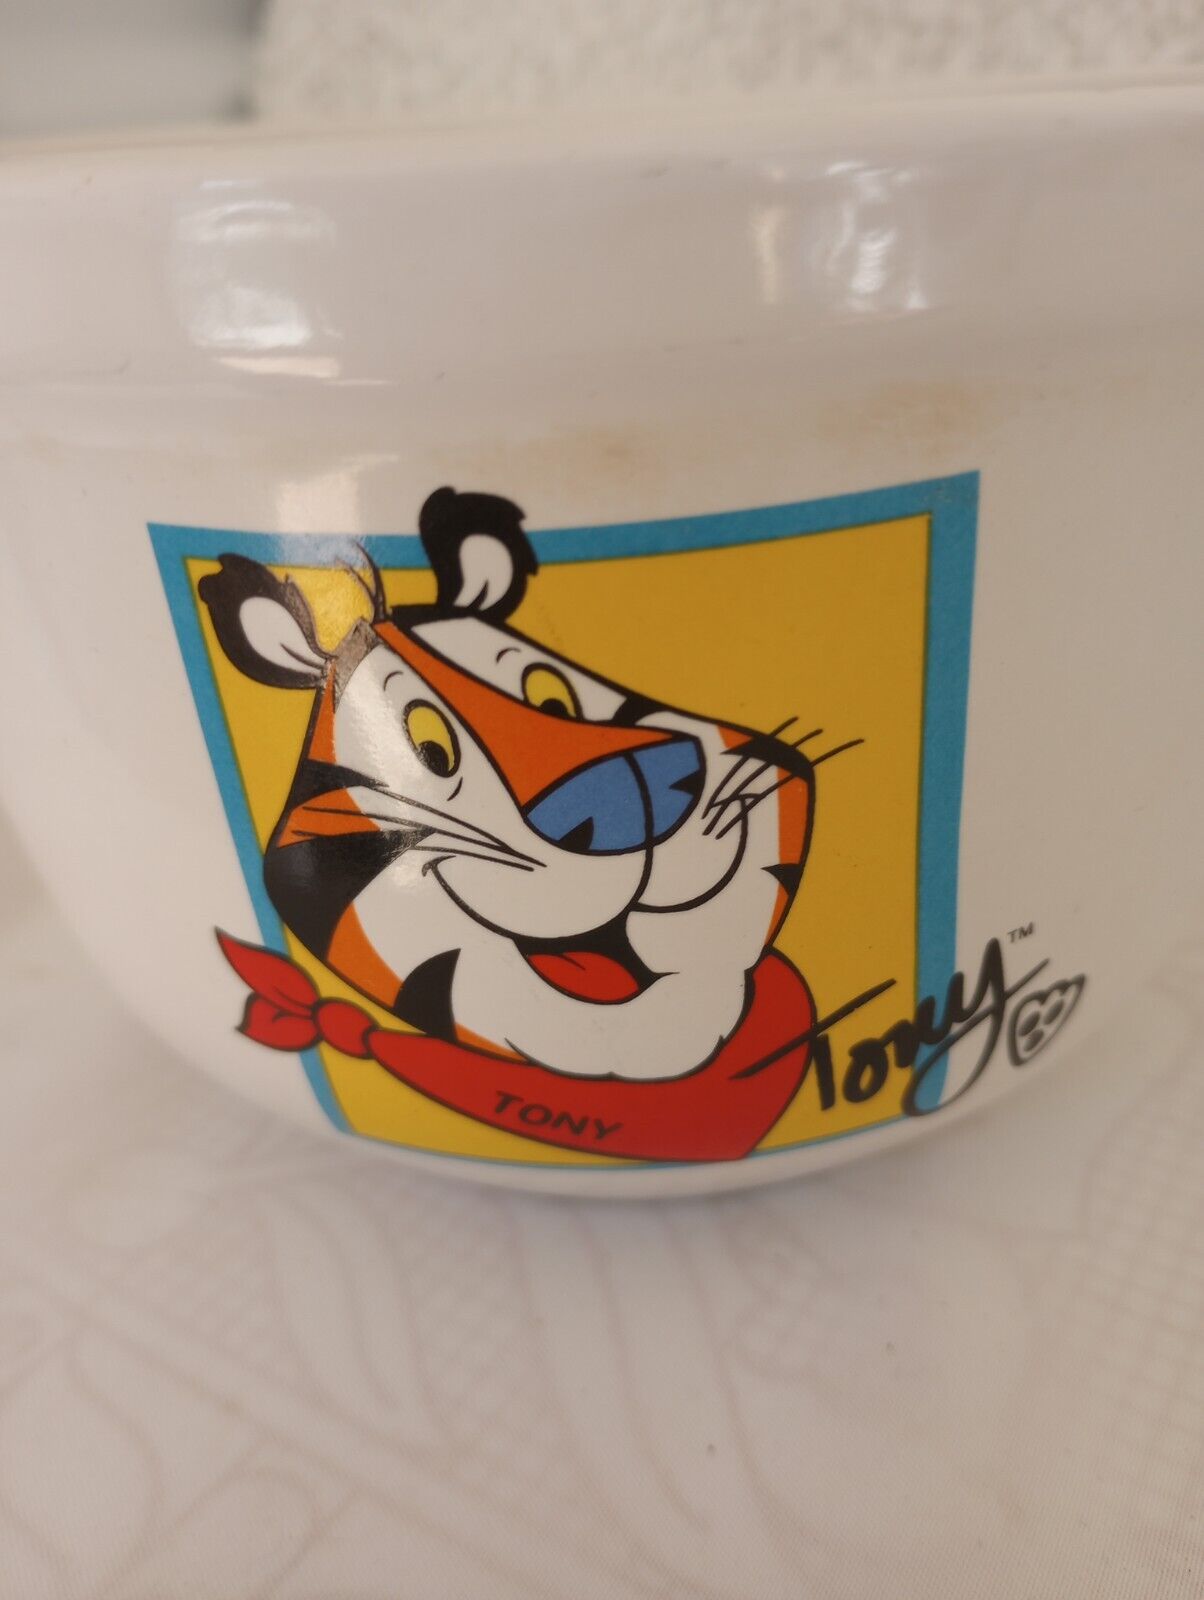 Kellogg's Tony the Tiger Cereal Bowl - 2002 